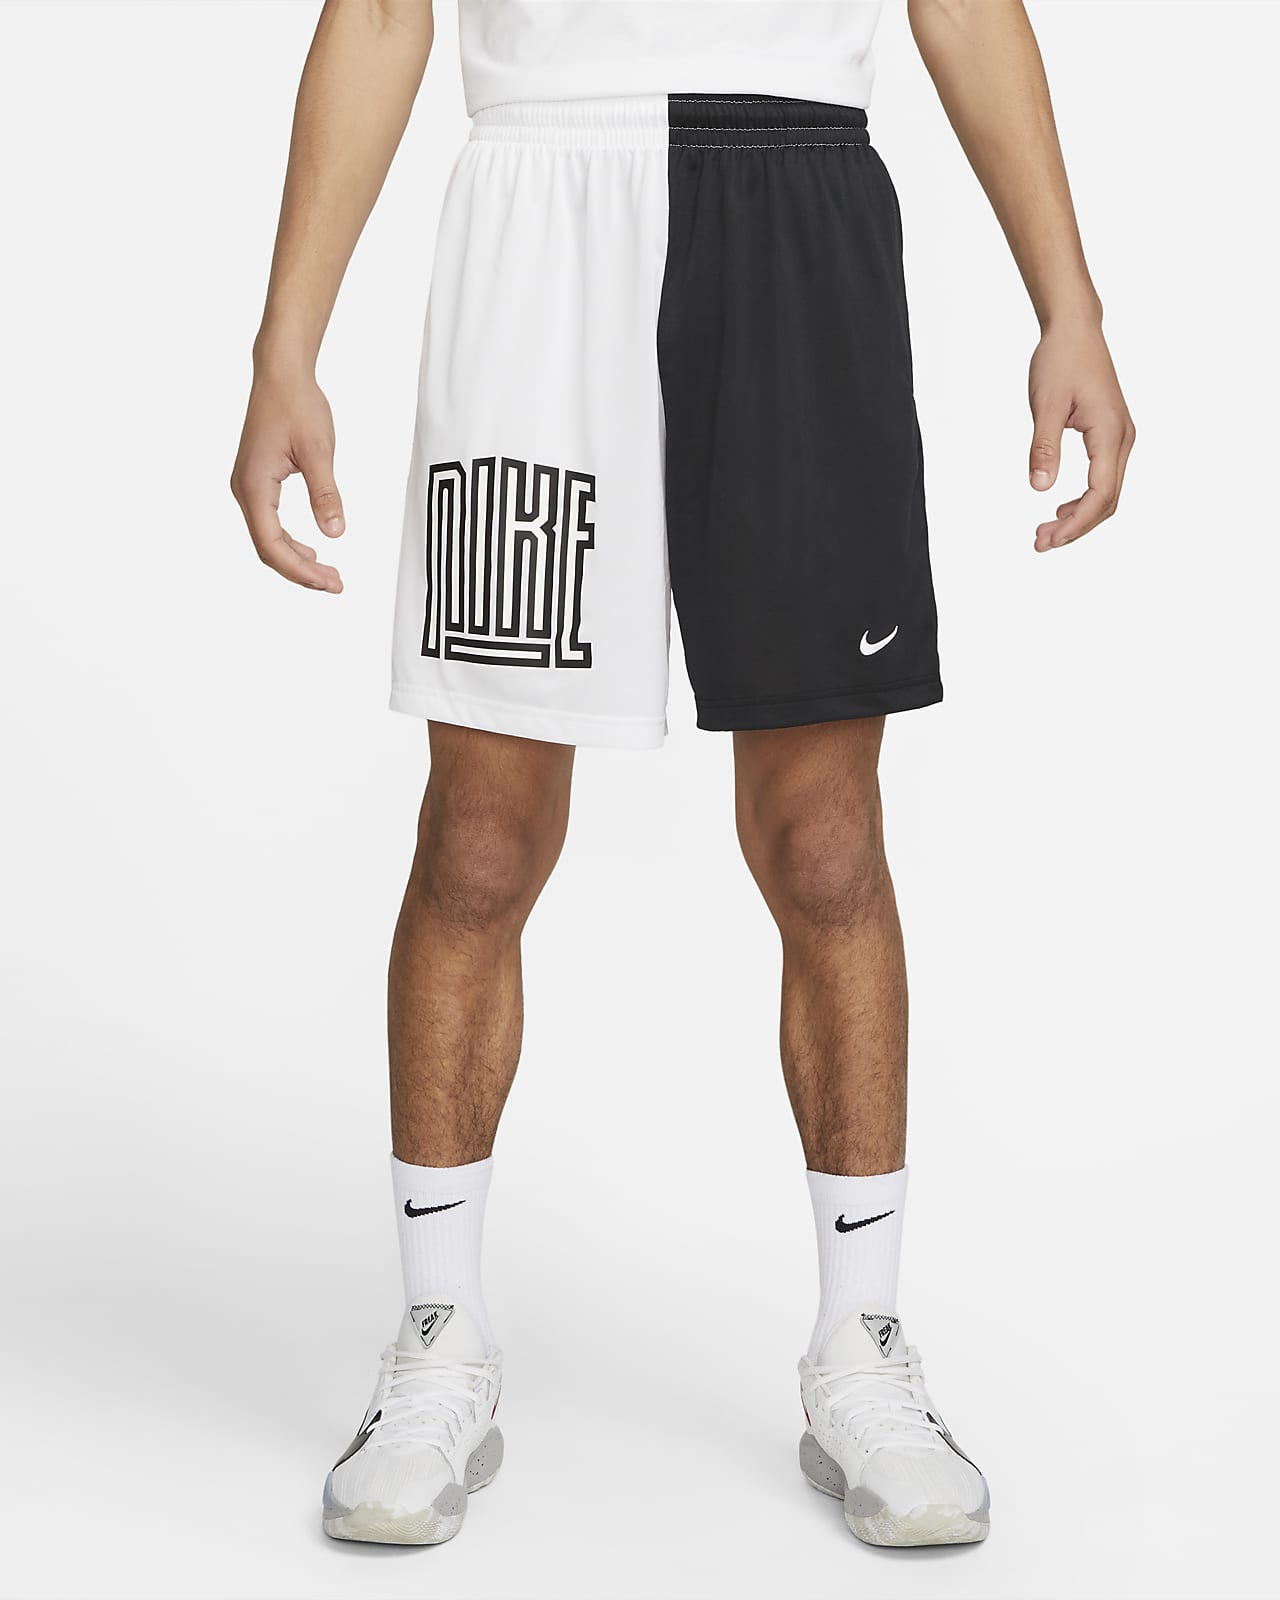 Shorts de básquetbol para hombre Nike Dri-FIT